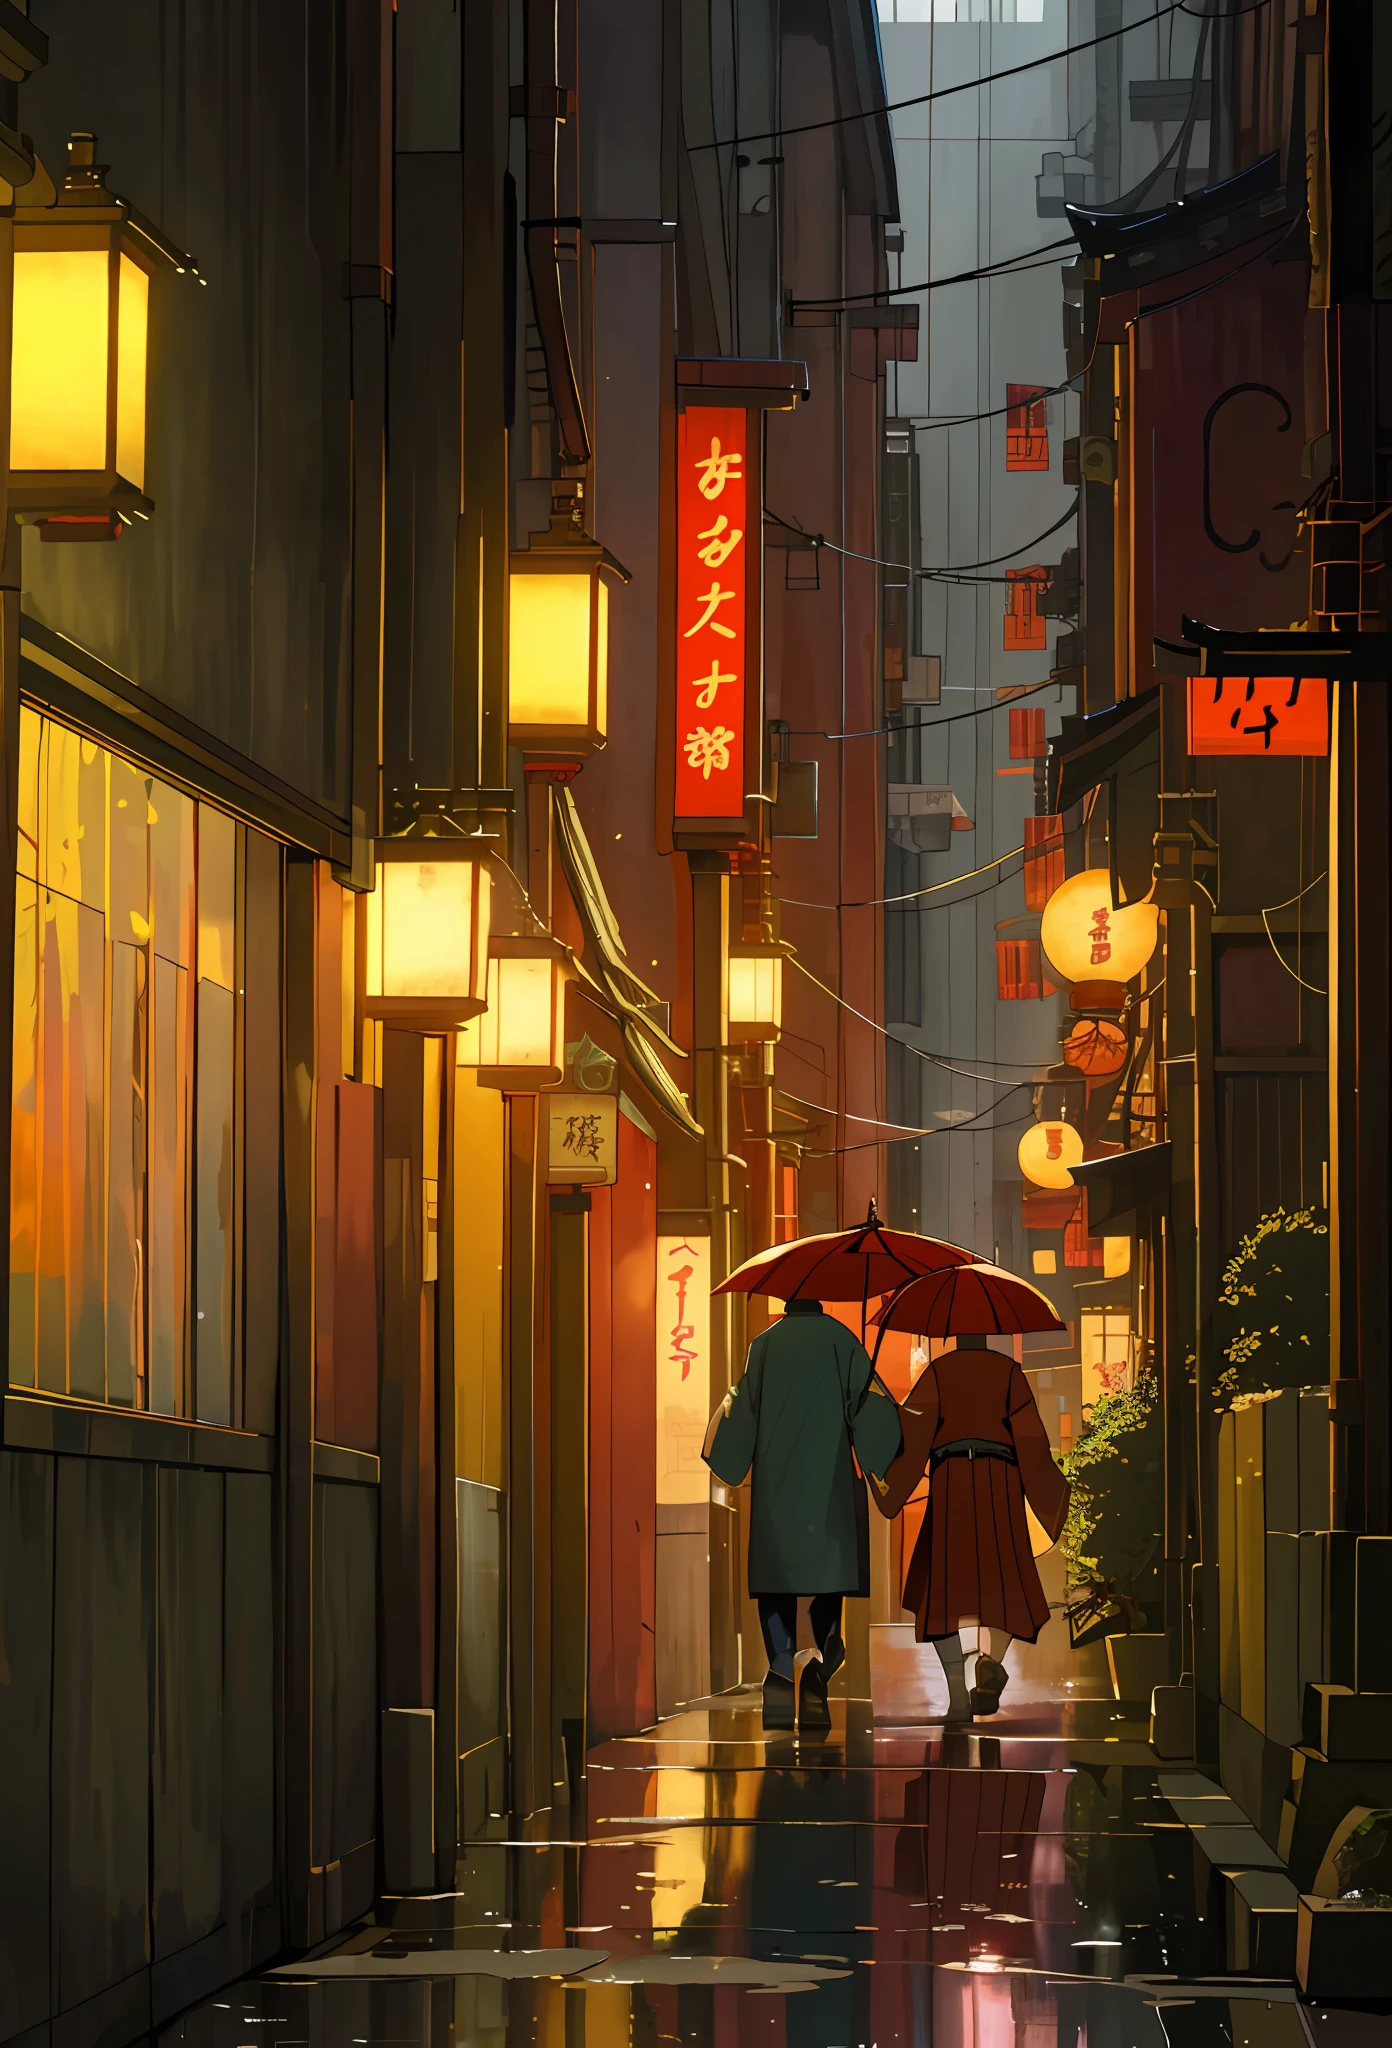 상점과 레스토랑이 늘어선 좁은 거리를 걷고 있는 사람들, 도쿄 이자카야 장면, 일본의 거리, 도쿄의 거리에서, in a 도쿄 거리, 도쿄 골목길, 밤에 일본 마을에서, 도쿄 거리, 일본 시내, 일본의 사이버펑크 거리, 밤에 일본 도시, 밤의 조용한 도쿄 골목, 밤에 도쿄에서, 밤의 일본, ((최고 품질, 8K, 걸작: 1.3)), 비오는, ((물웅덩이: 1.3)), 미래 지향적인, 일몰